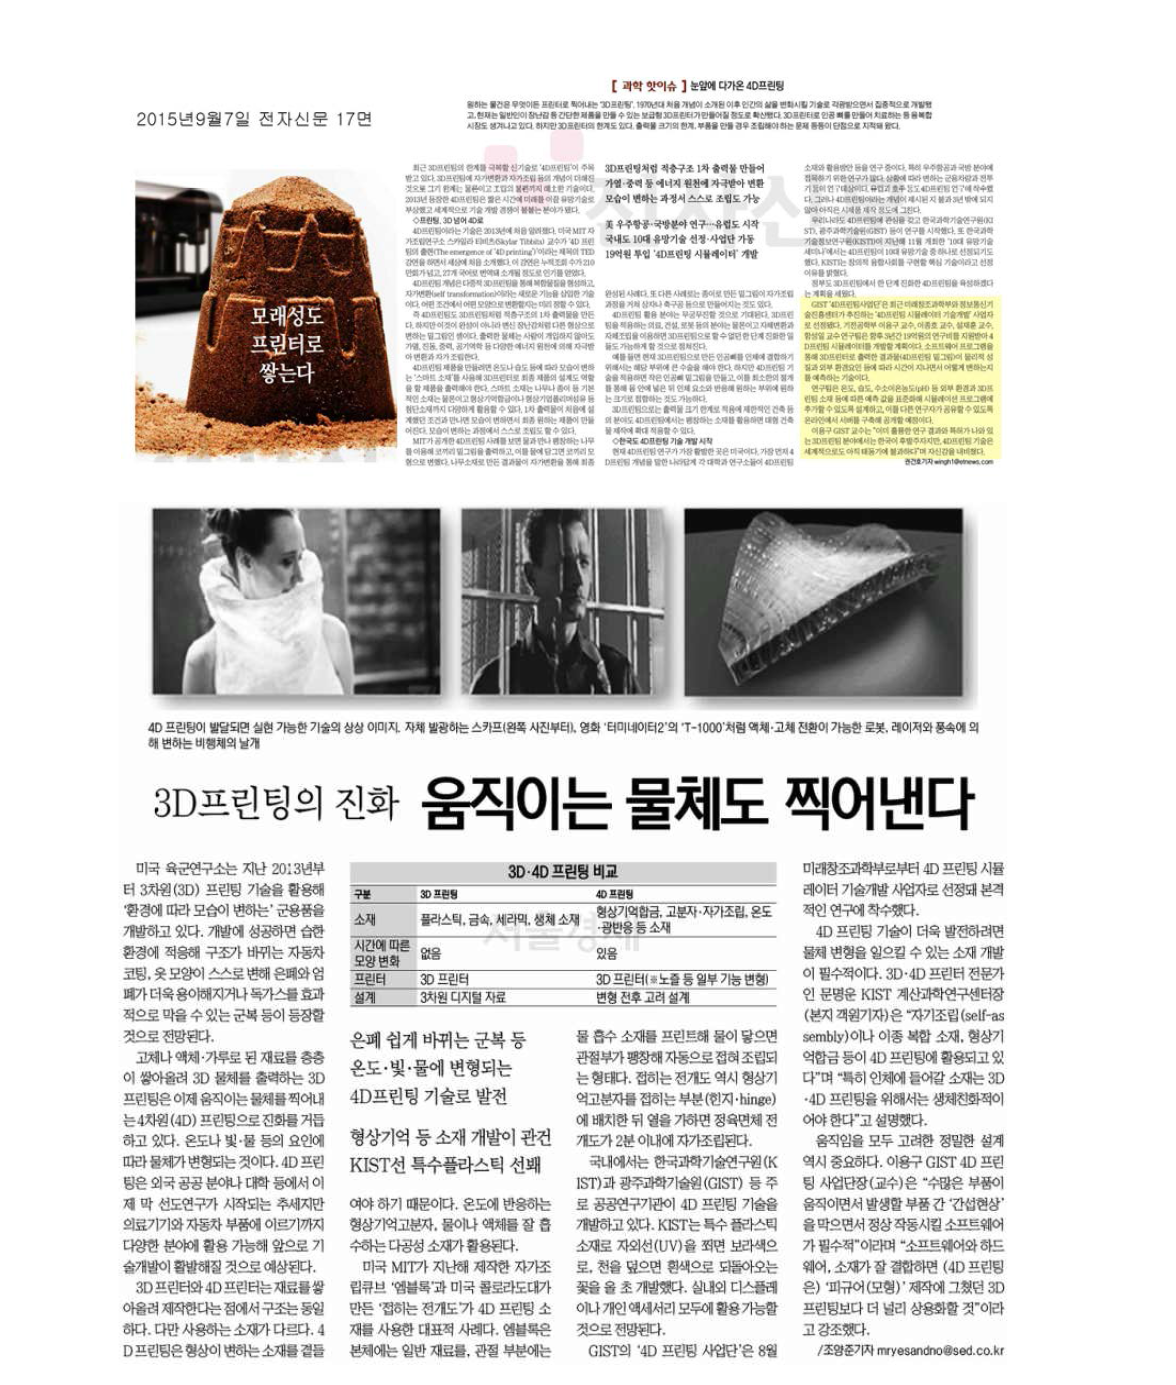 2015년 11월 19일 서울 경제신문 지면 기사